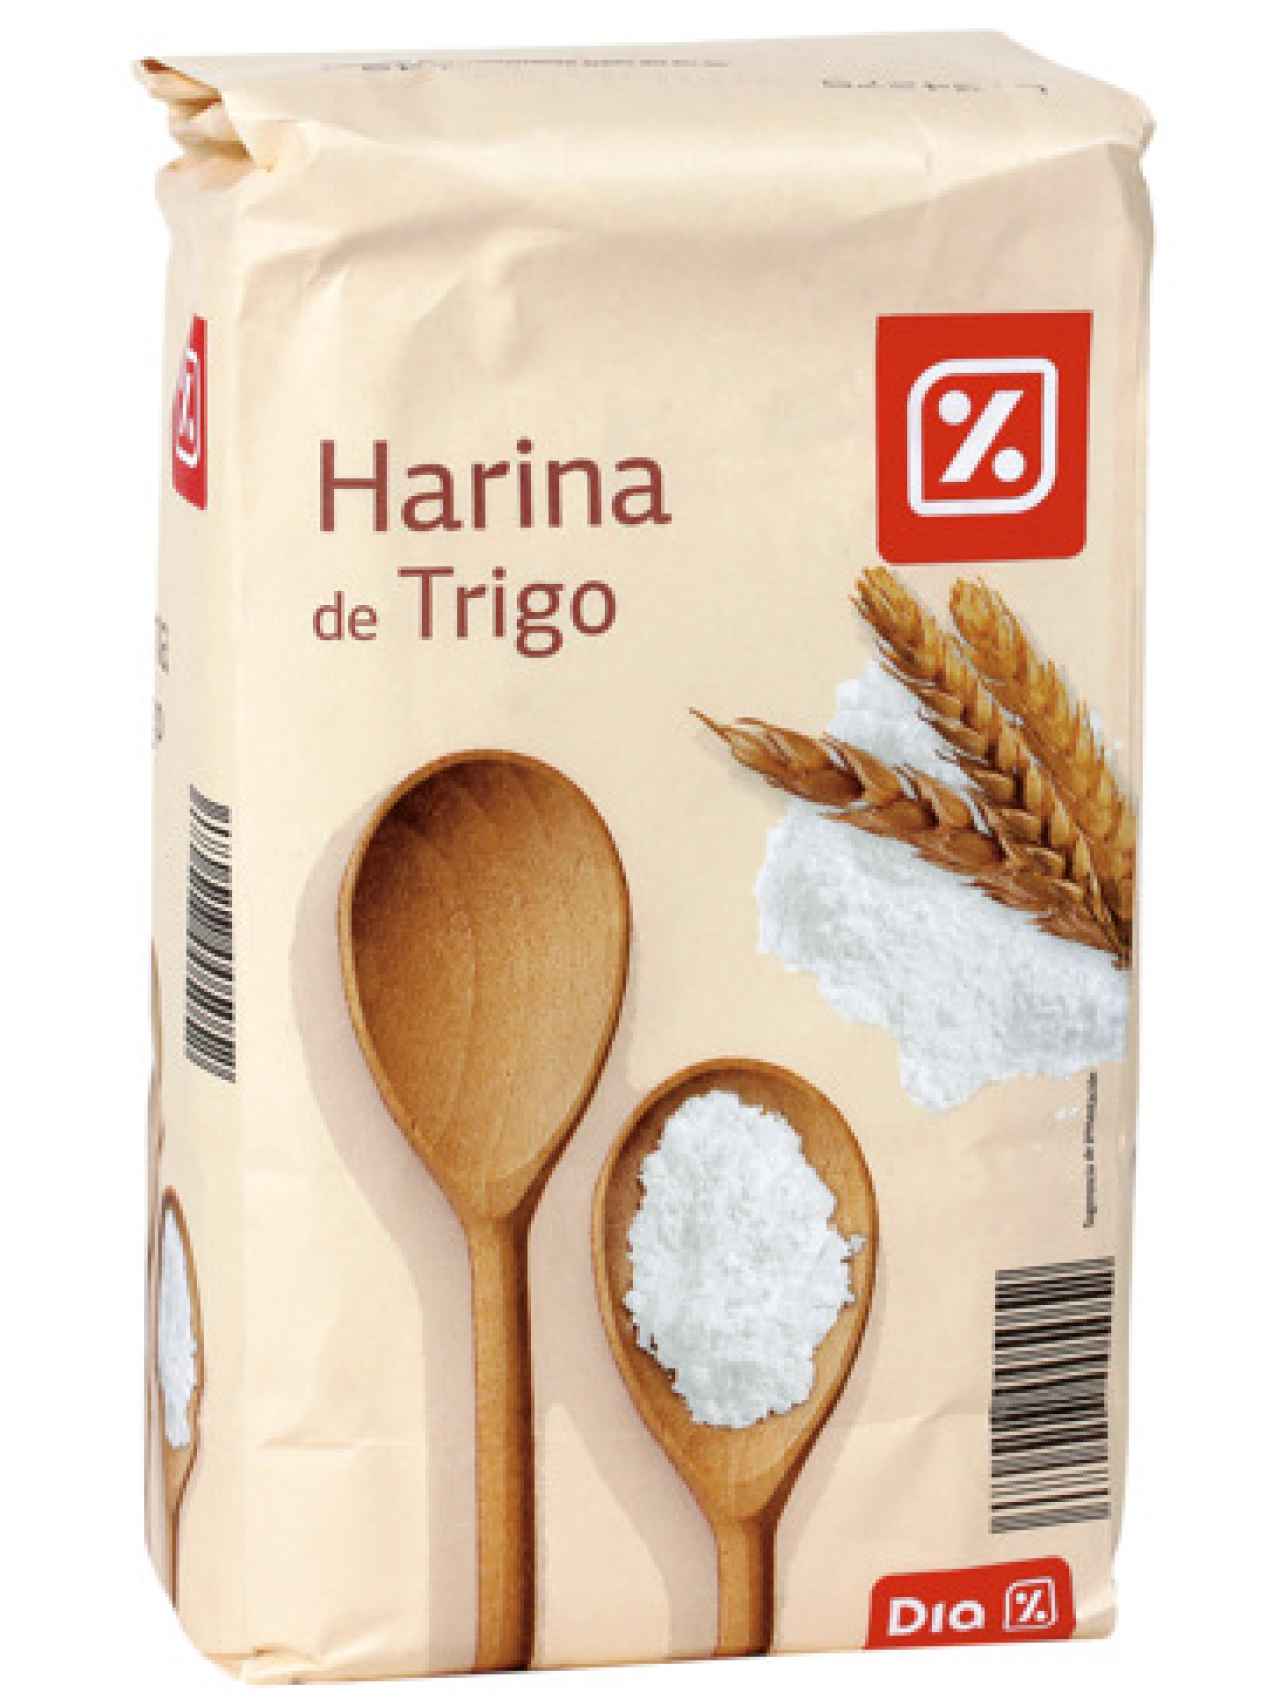 La harina de trigo de la marca blanca de Dia.